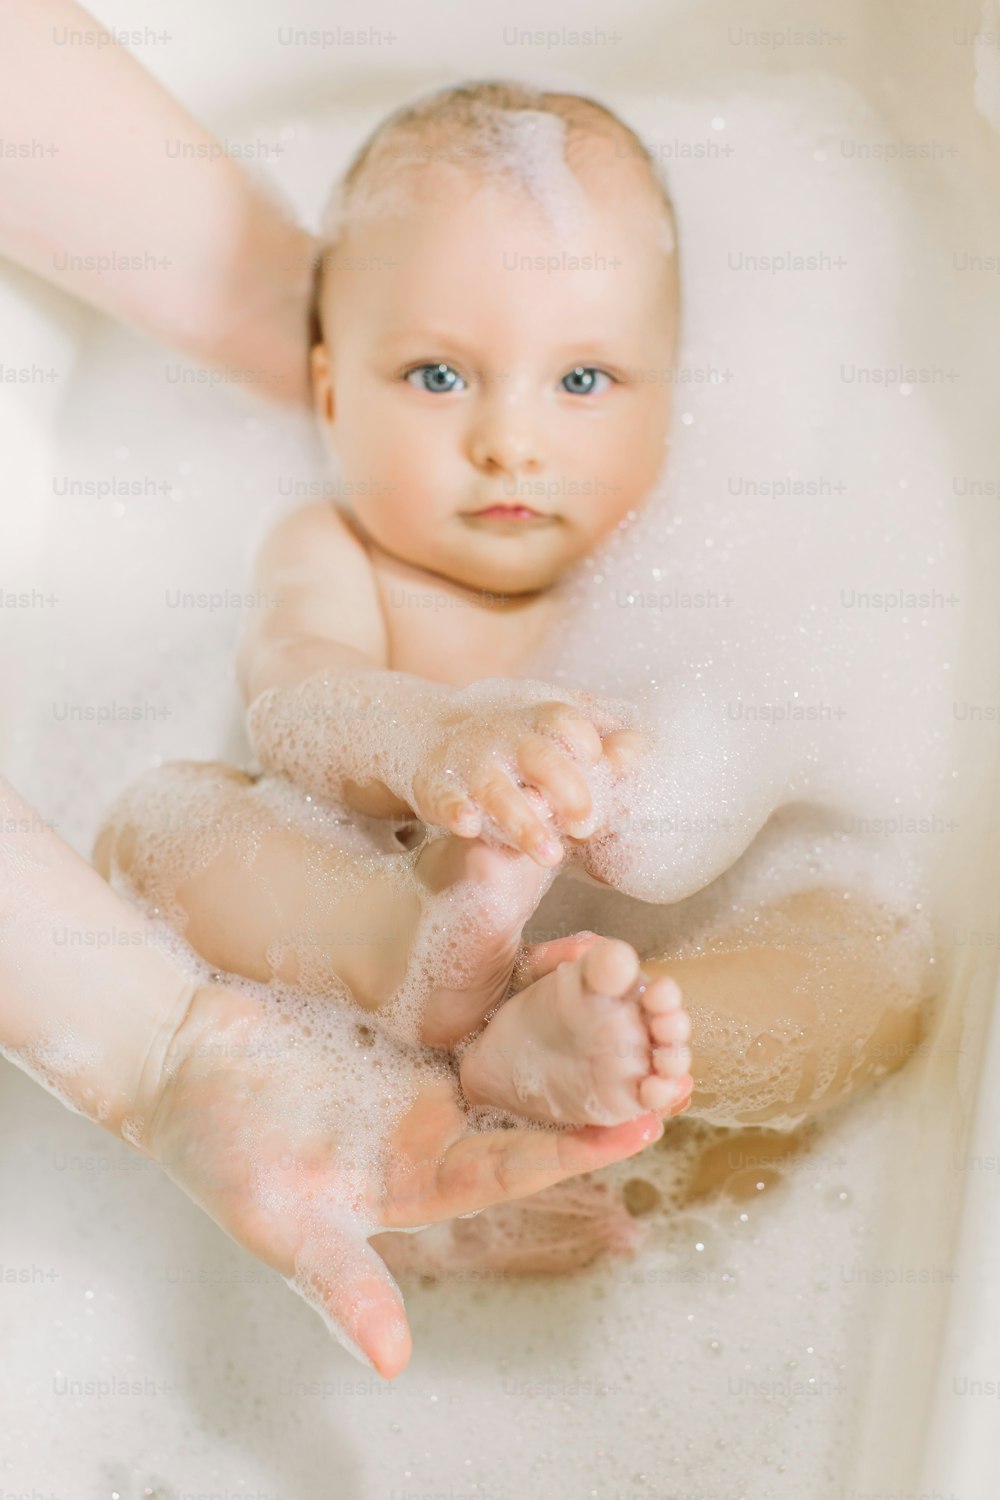 Bebé feliz riendo tomando un baño jugando con burbujas de espuma. Niño pequeño en una bañera. Lavado y baño de bebés. Higiene y cuidado de los niños pequeños. Baño del bebé recién nacido